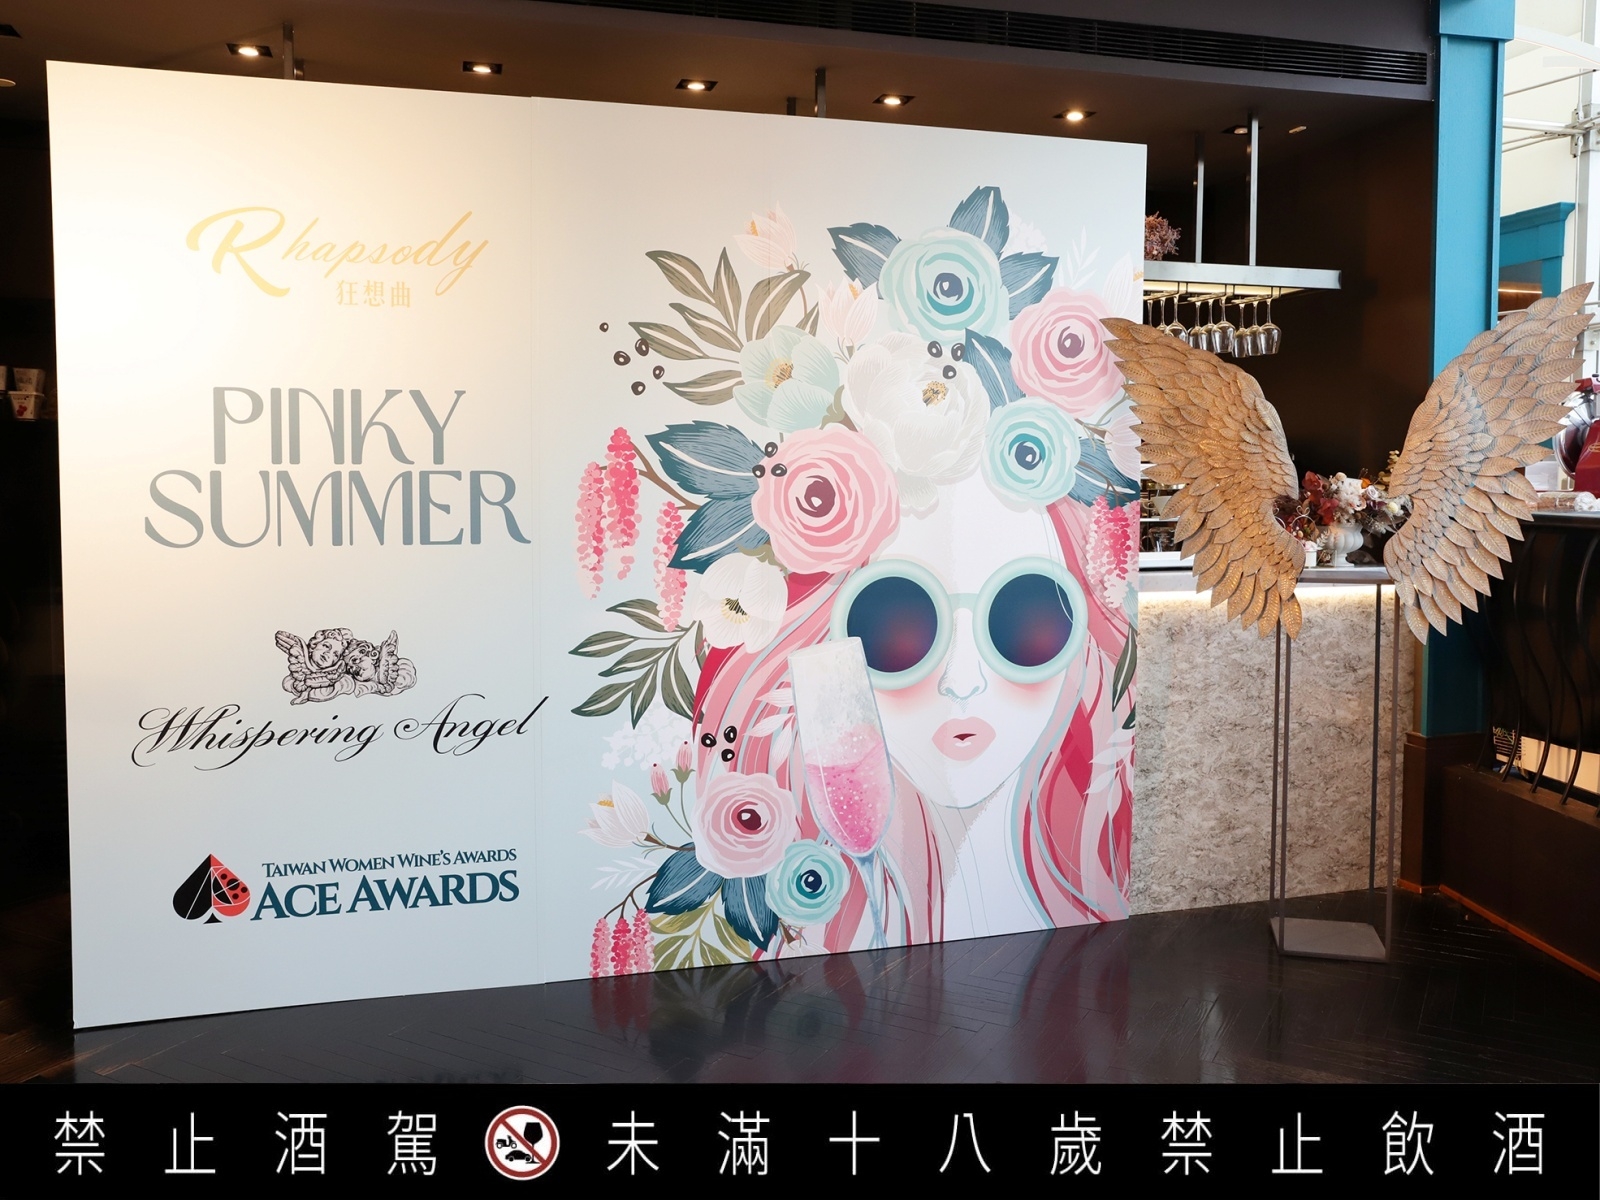 粉紅原力與你同在！台灣女子愛思葡萄酒大賞ACE AWARDS TAIWAN發起「Pinky Summer夏日粉紅」